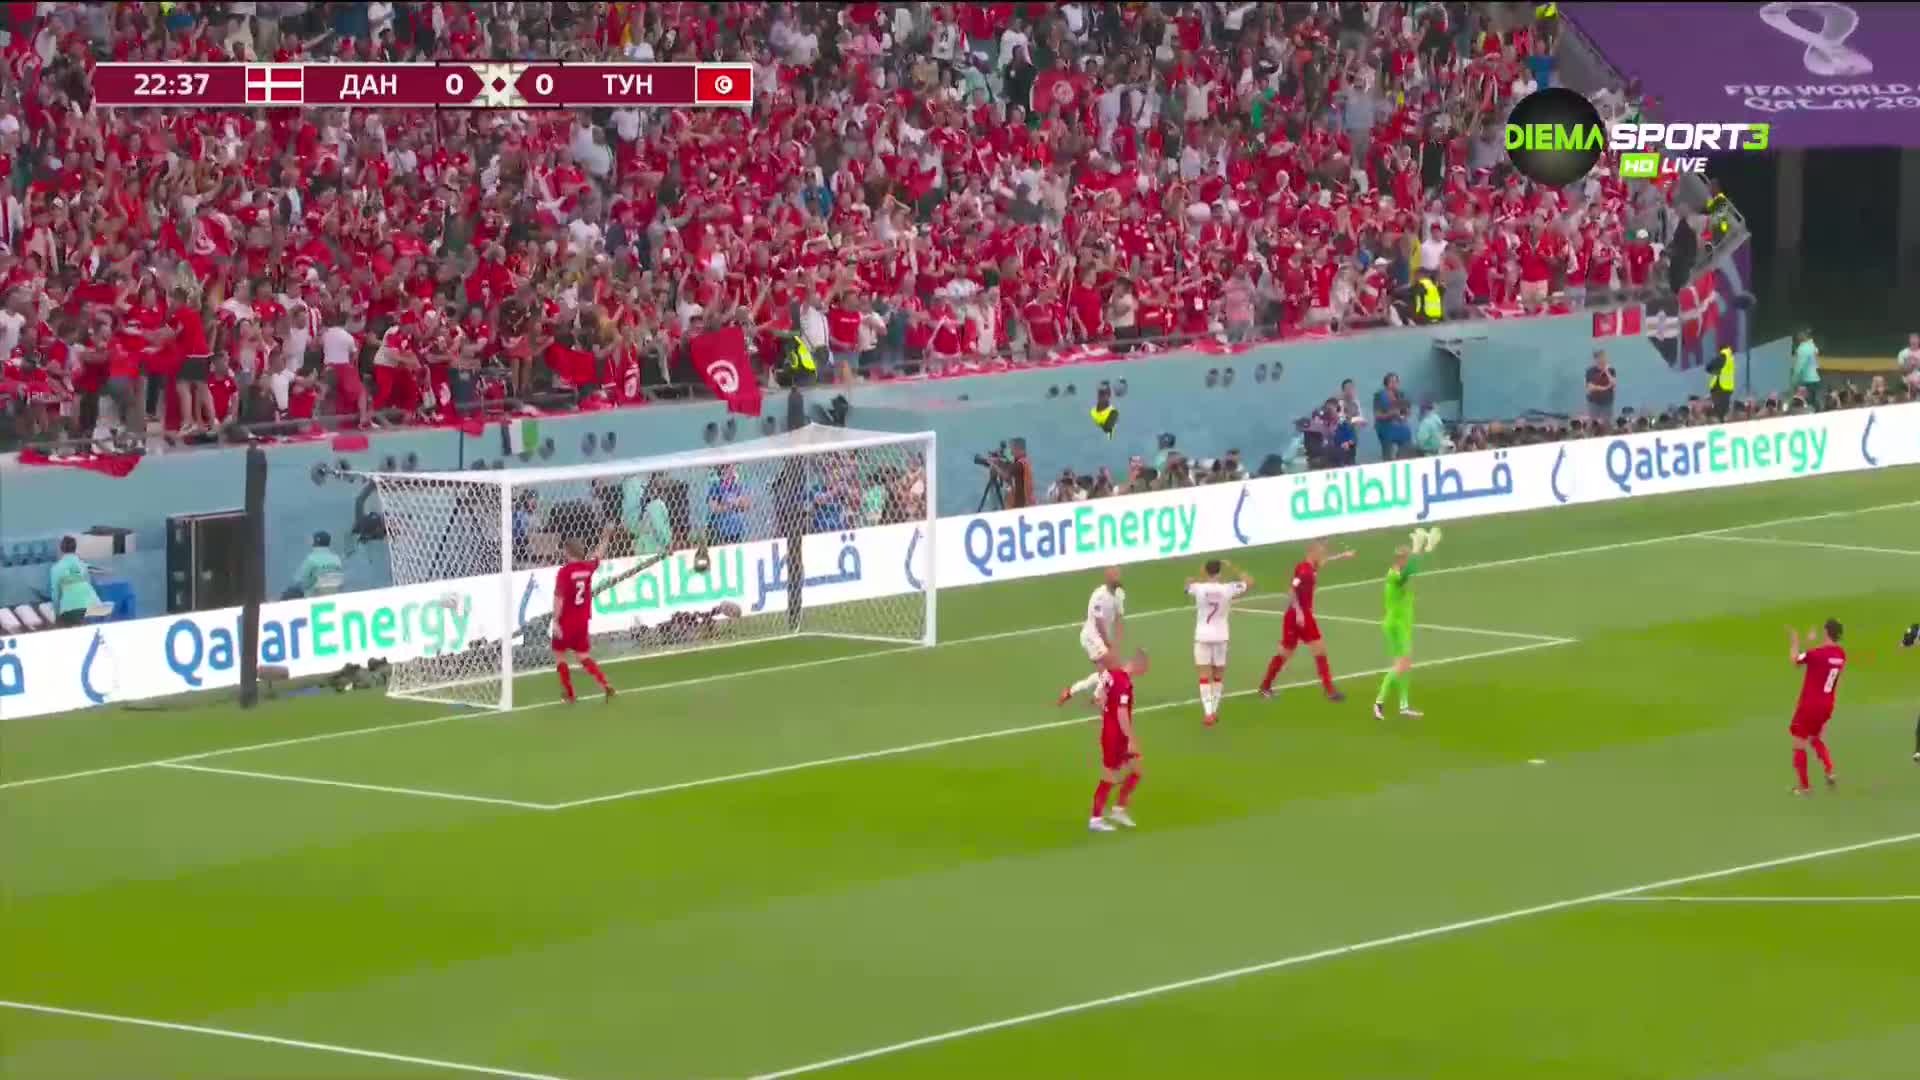 Дания - Тунис 0:0 /първо полувреме/